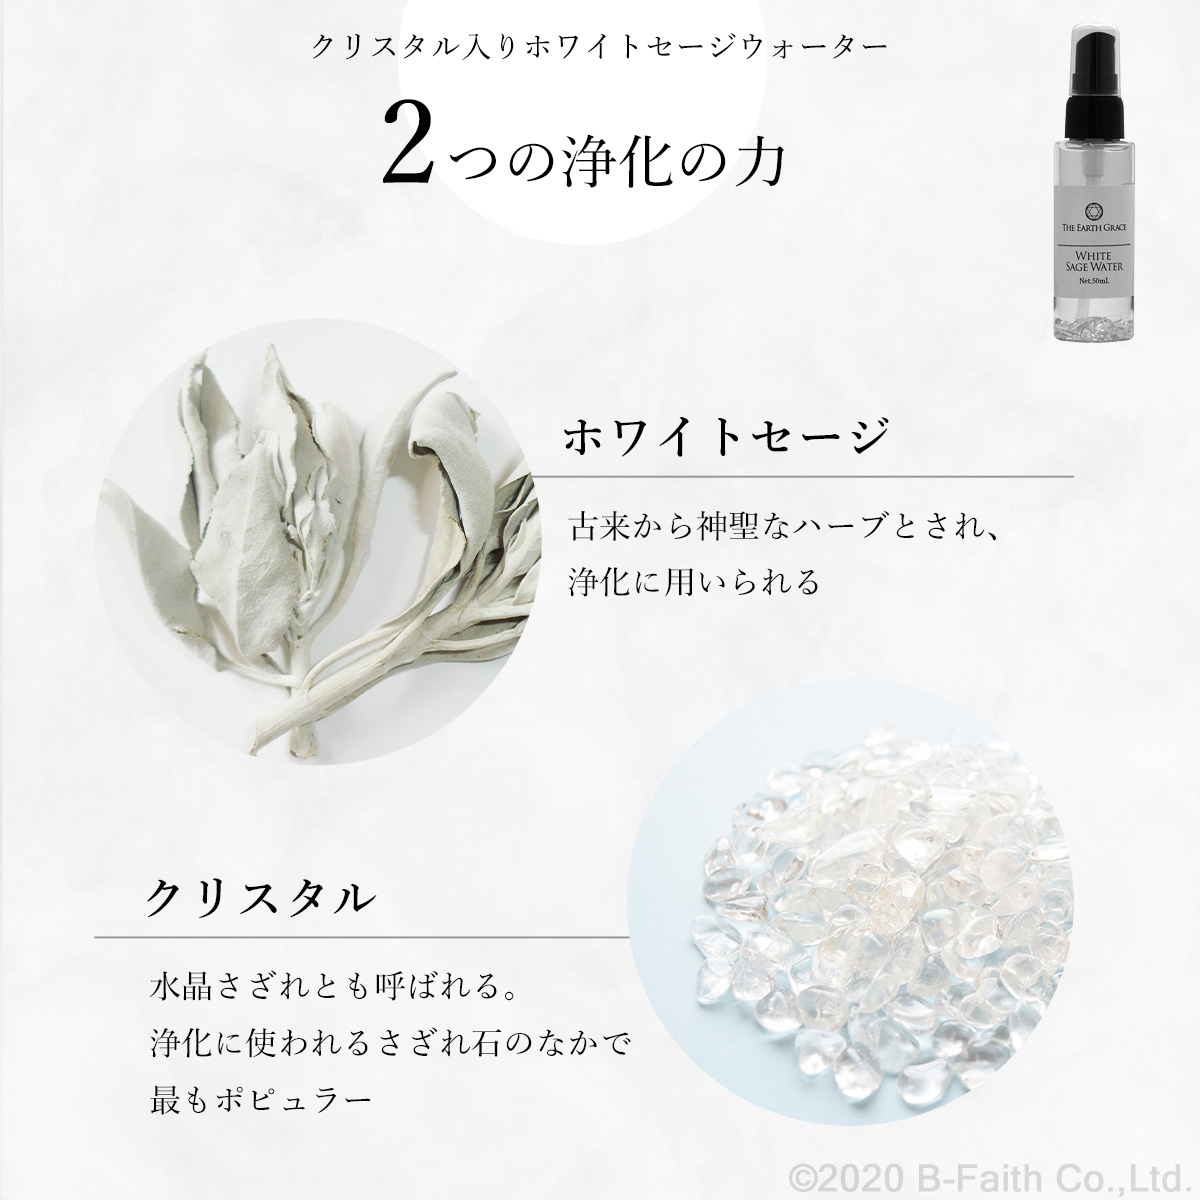 ホワイトセージの香り 天然石水晶さざれ石入り 30ml - お香